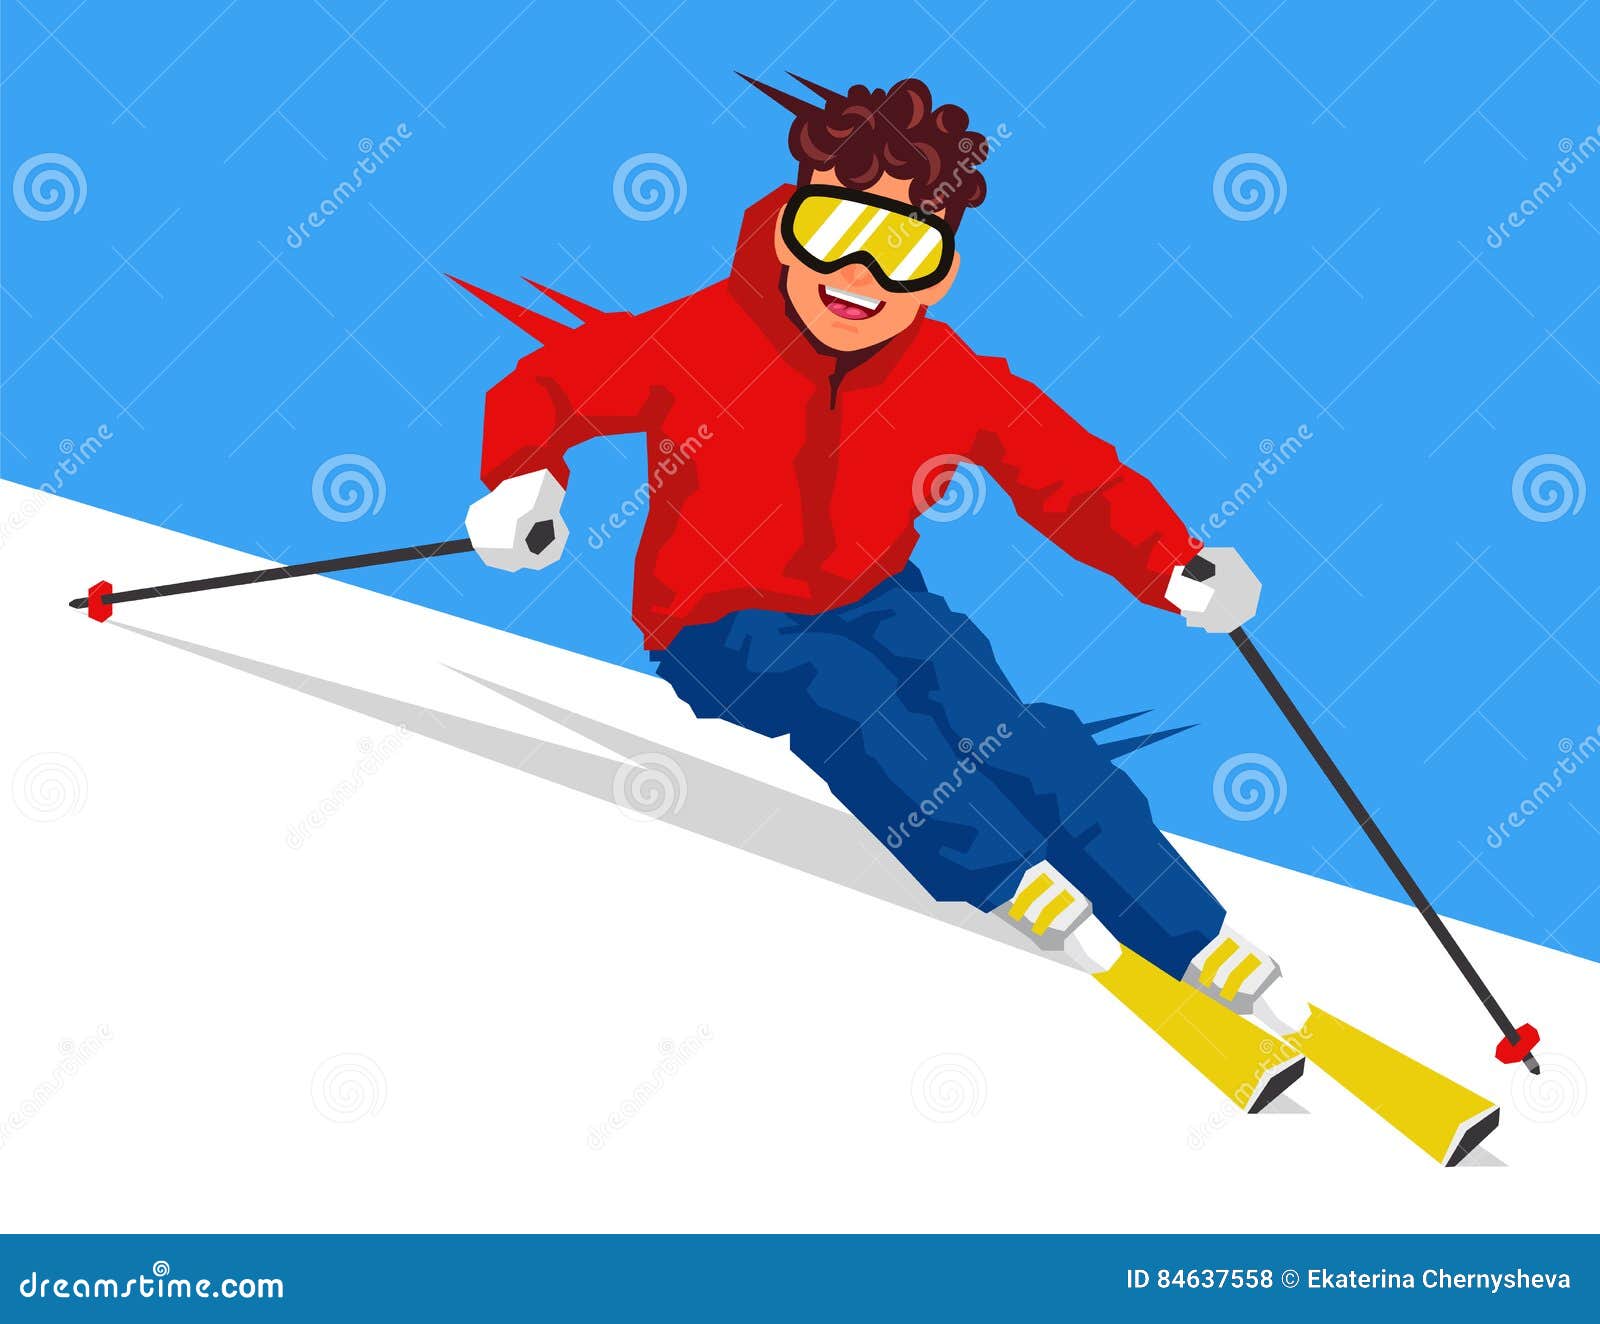 Лыжник скатывается